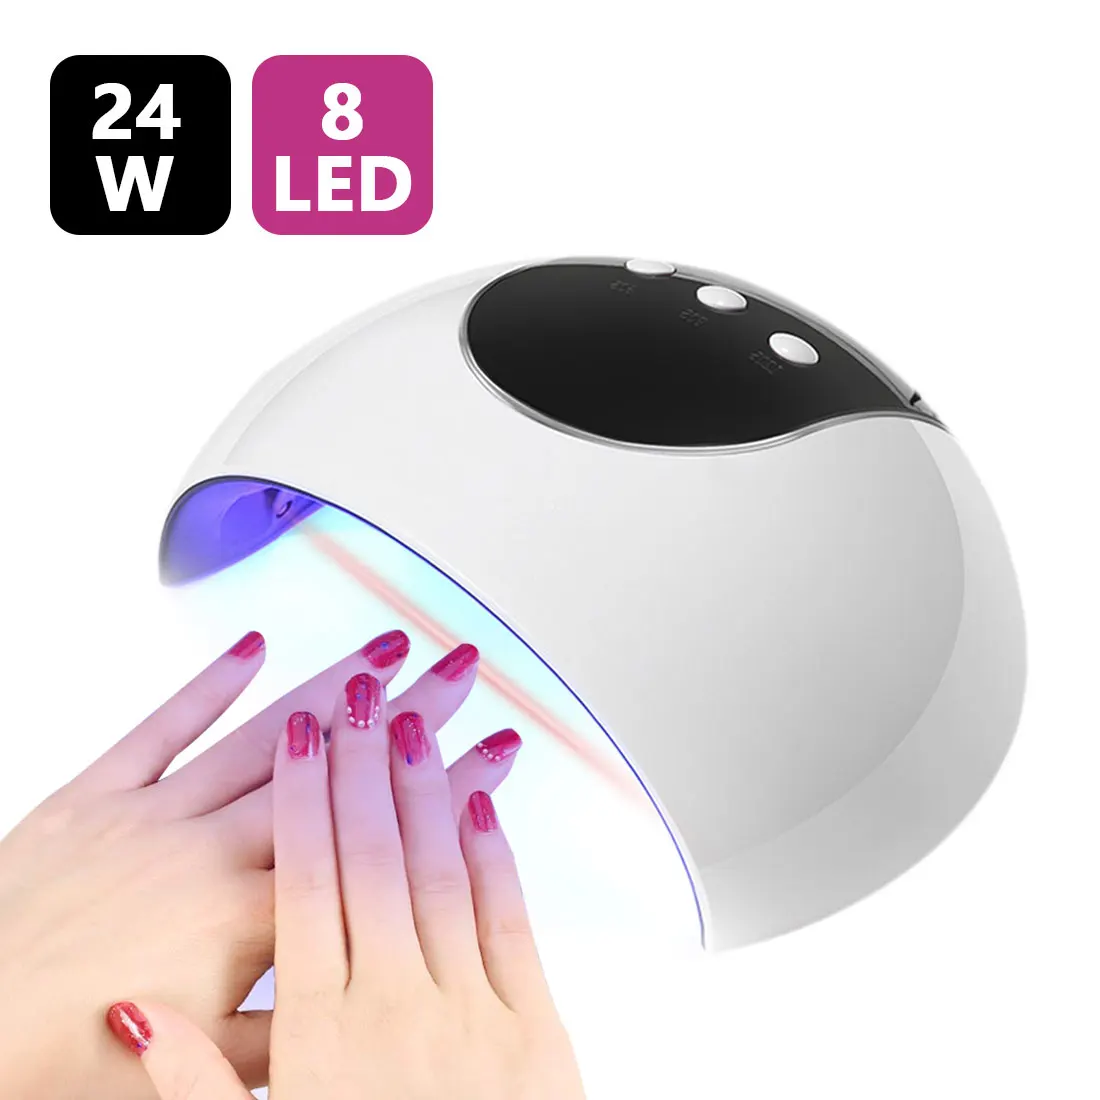 9/24 Вт УФ светодиодная лампа для сушки ногтей Портативный USB кабель для салона/домашний Применение Гель-лак для ногтей сушилка мини-лампа с USB Сушилки маникюр